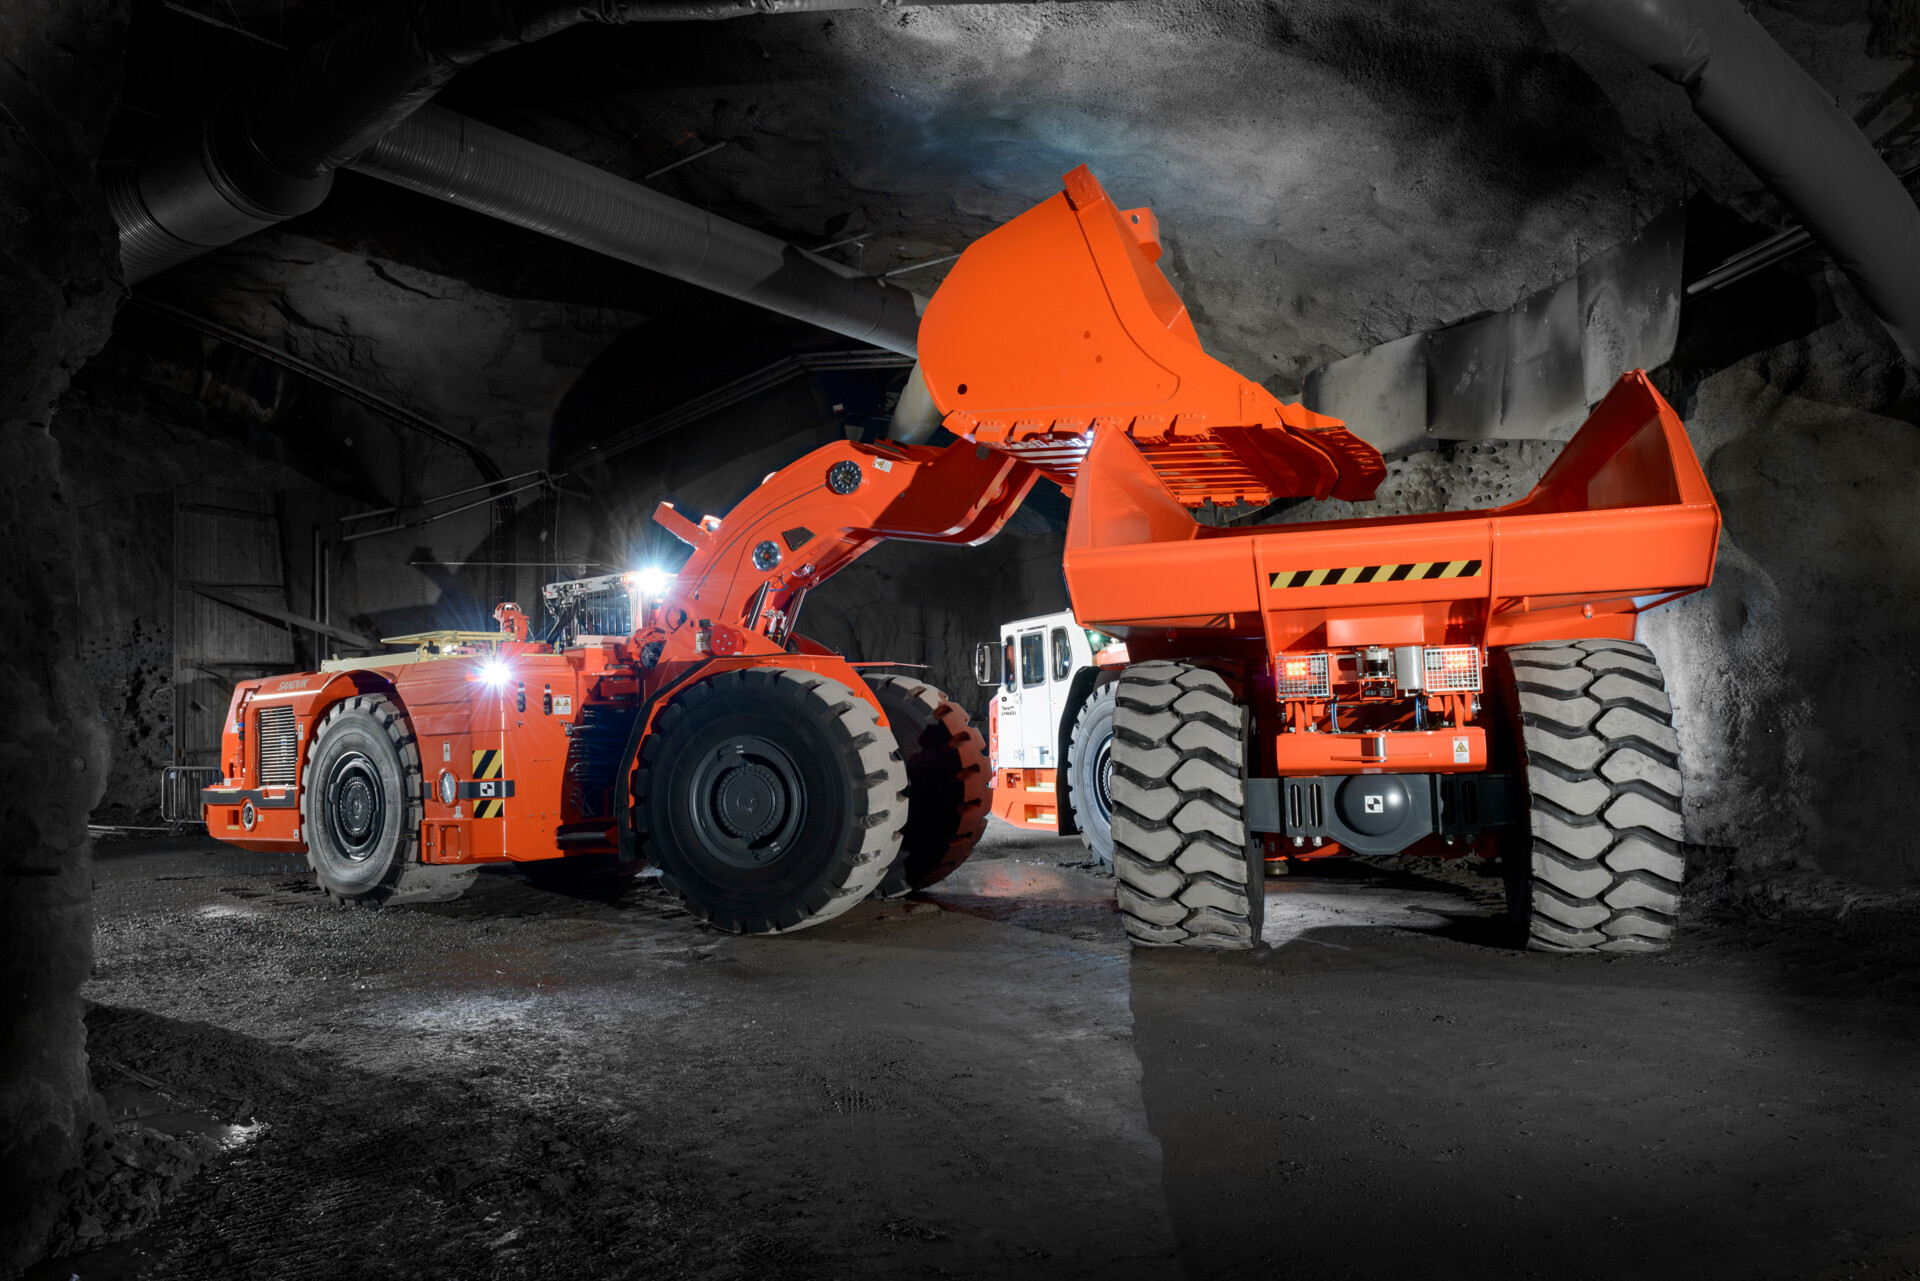 Major order for Sandvik underground equipment from Evolution Mining for Australian mines - International Mining